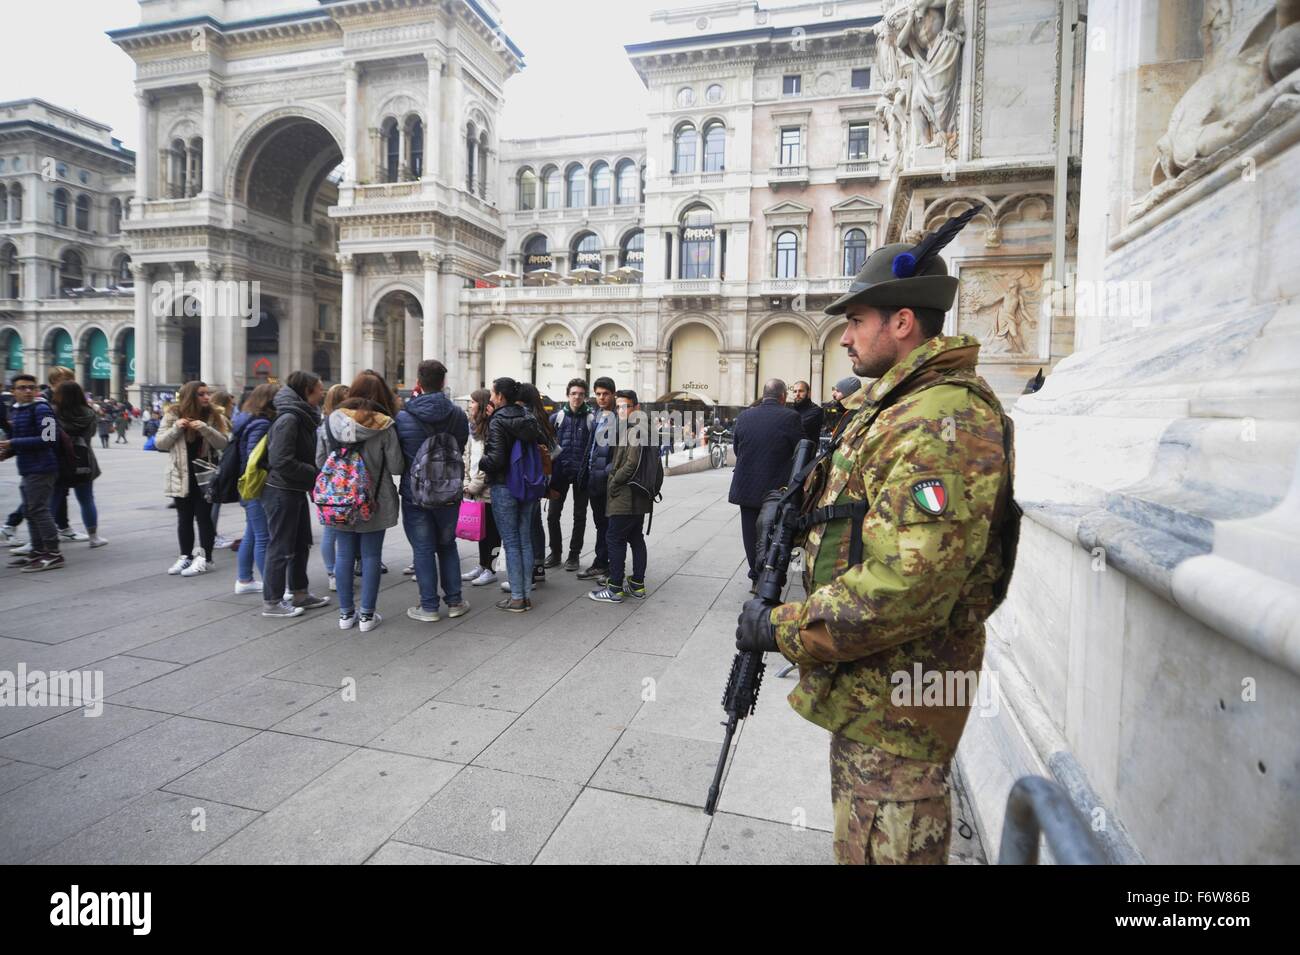 Milano, Italia. Il 19 Novembre, 2015. L'esercito di anti-terrorismo servizio di sicurezza attorno alla cattedrale Duomo Credito: Dino Fracchia/Alamy Live News Foto Stock